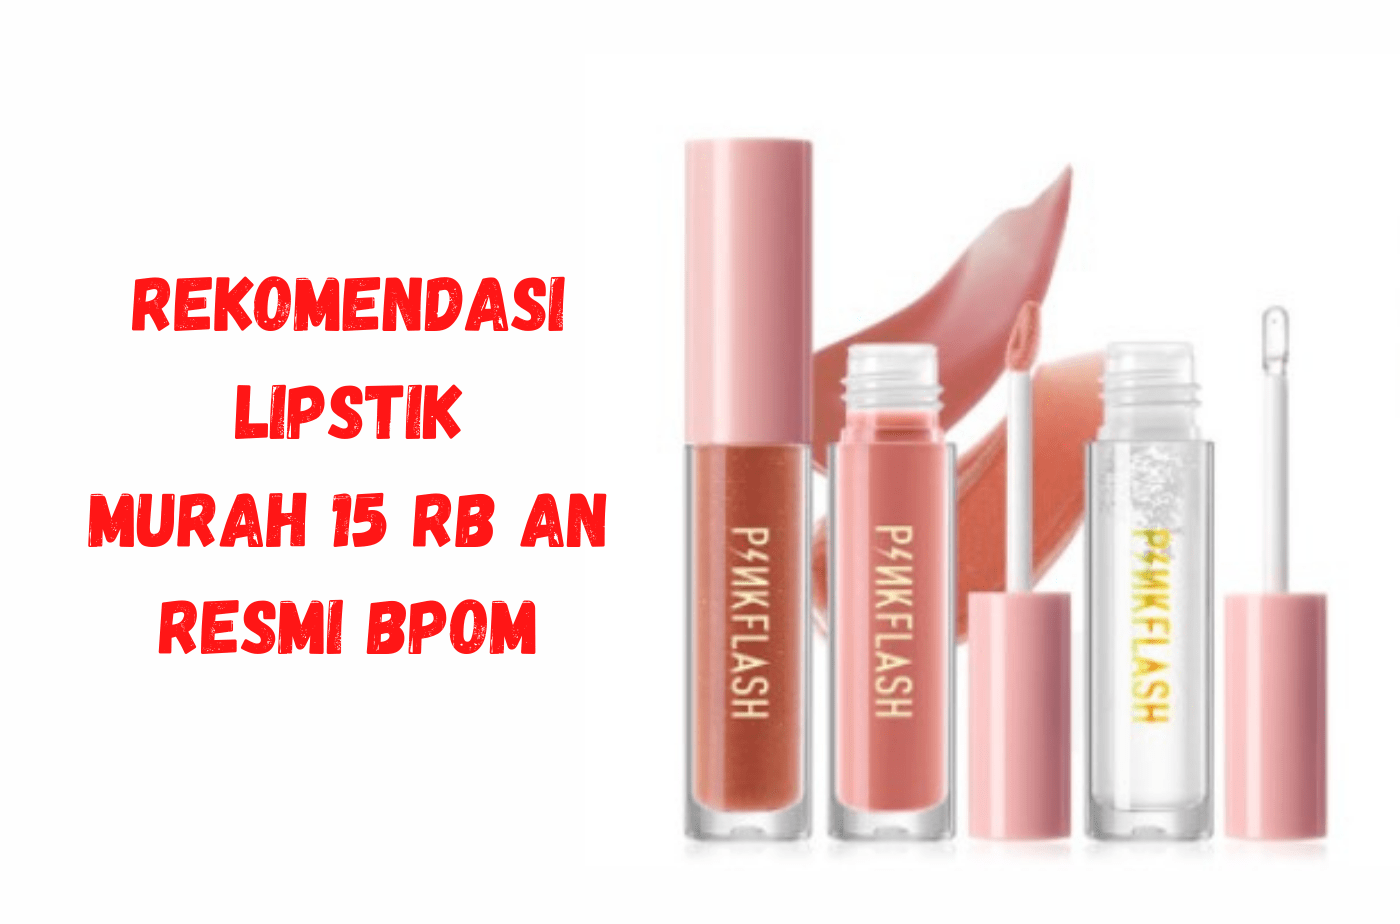 Rekomendasi Lipstik 15 Rb an, Awet dan Mempesona